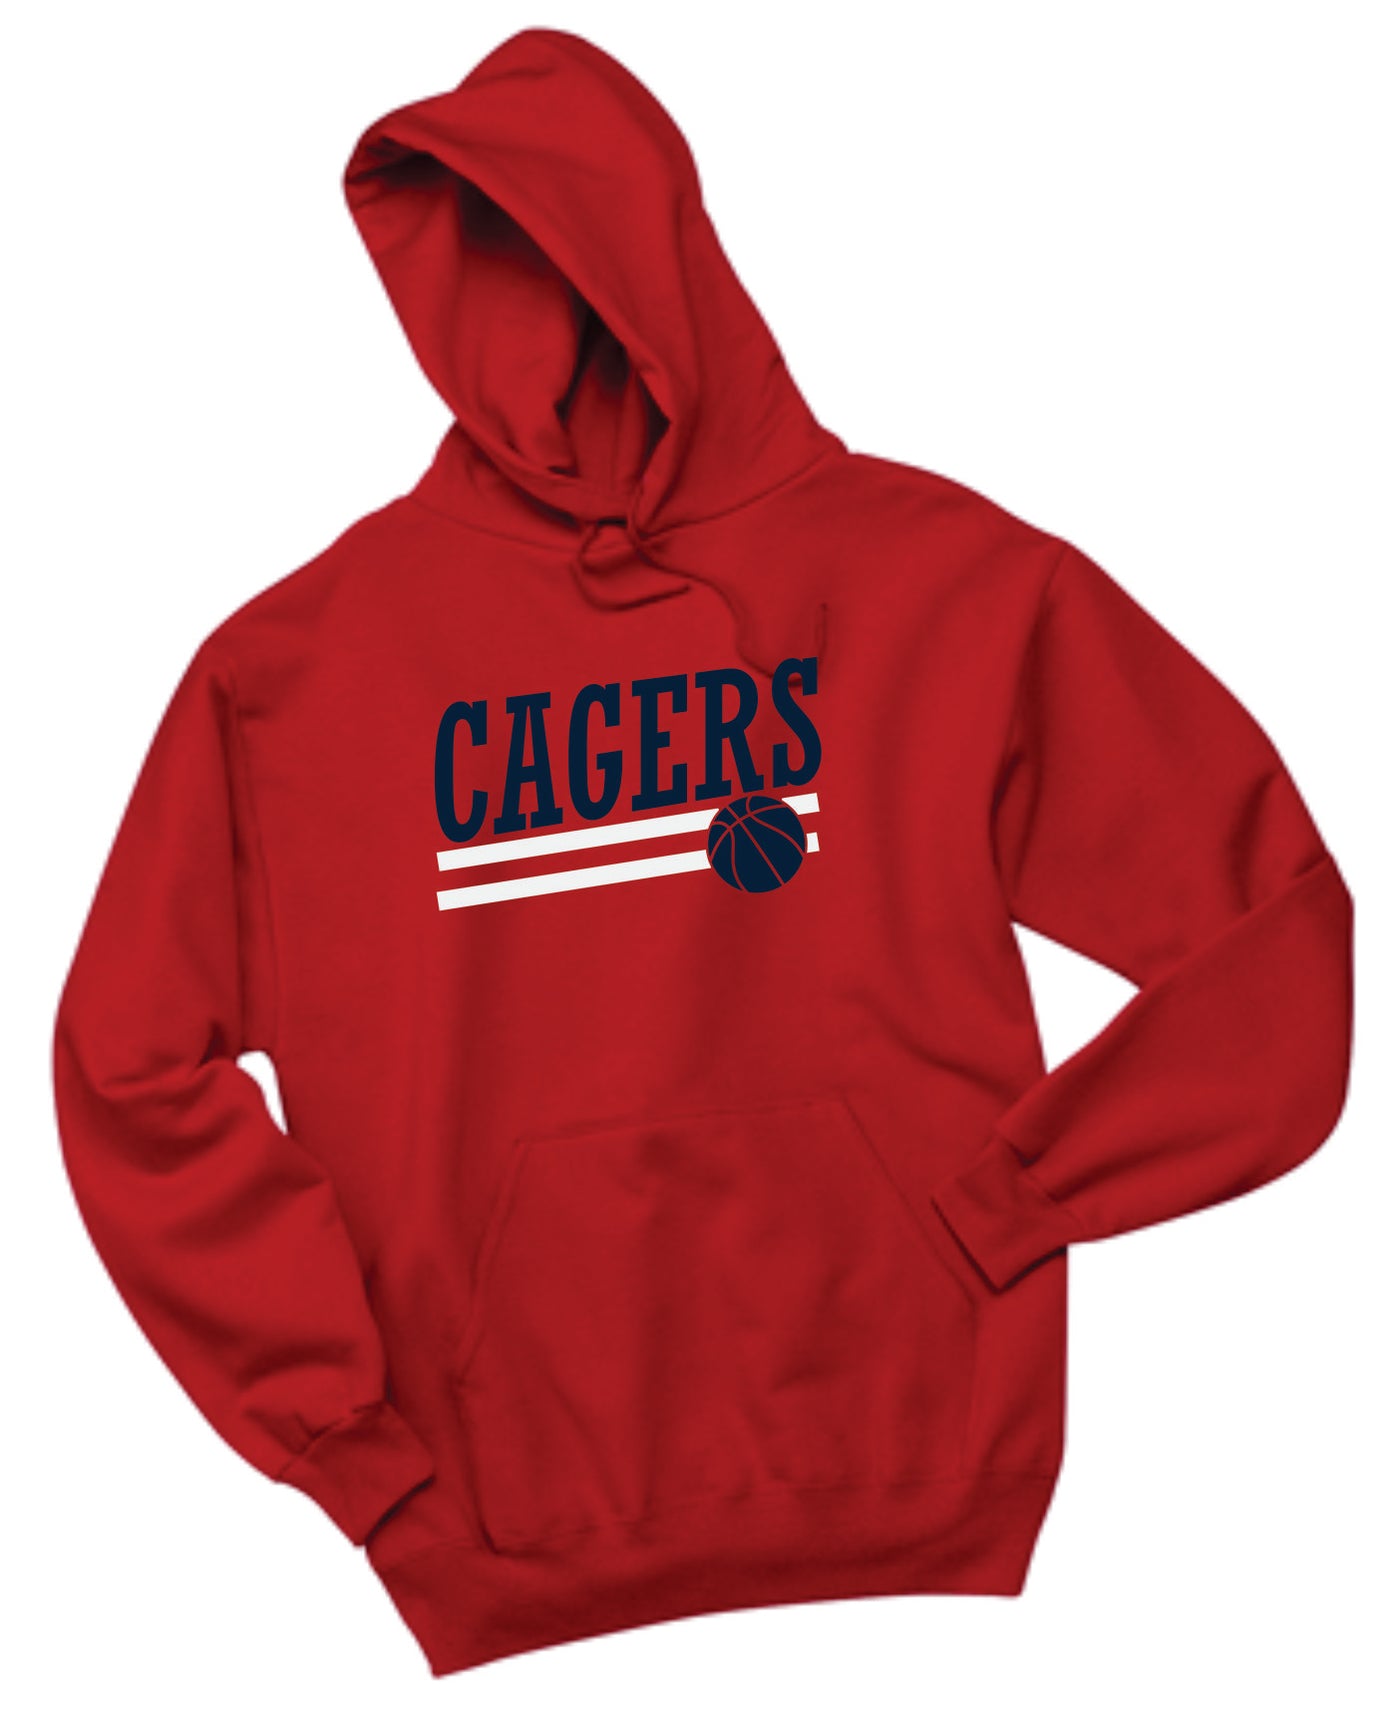 Cagers Basketball Slant Hooded Sweatshirt